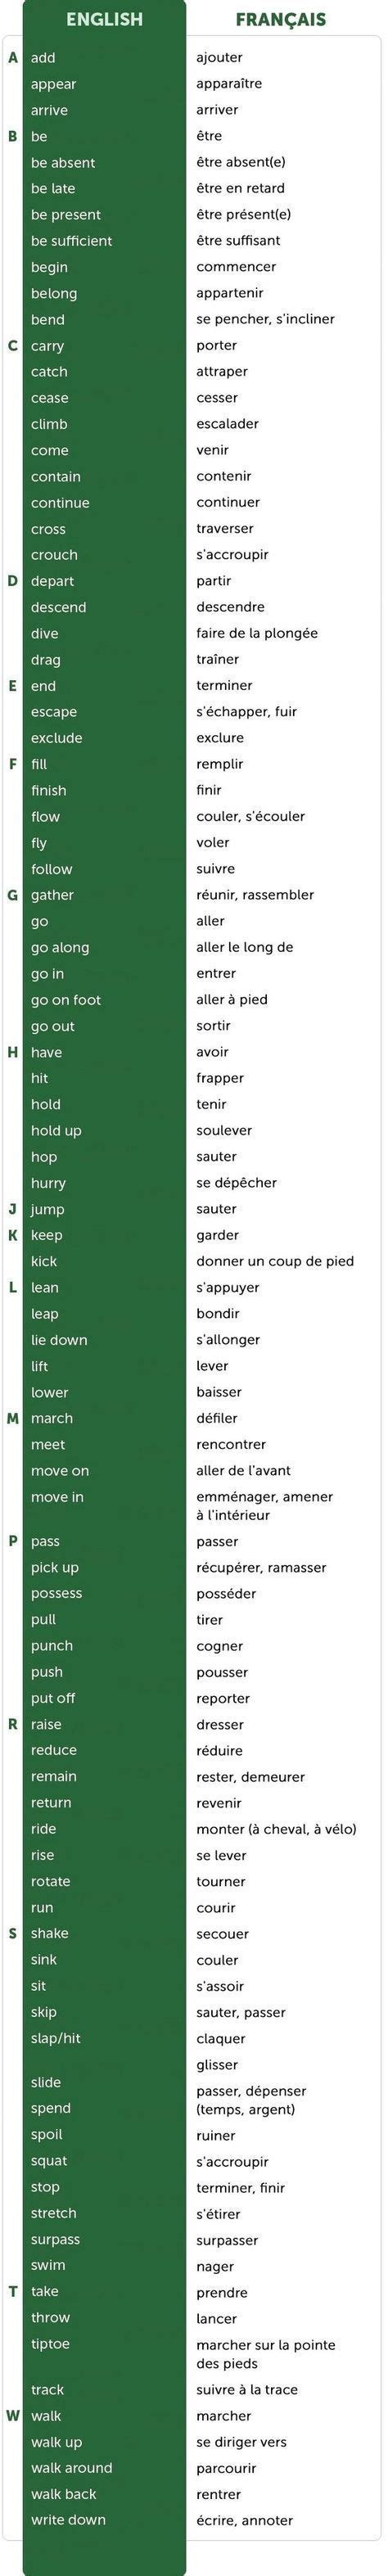 Voici les 20 verbes les plus utilisés en anglais, classés par fréquence d'utilisation, avec leur conjugaison au présent et un exemple pour chacun. 100 Verbes anglais de mouvement et d'action | English verbs, Learn english, Learn french